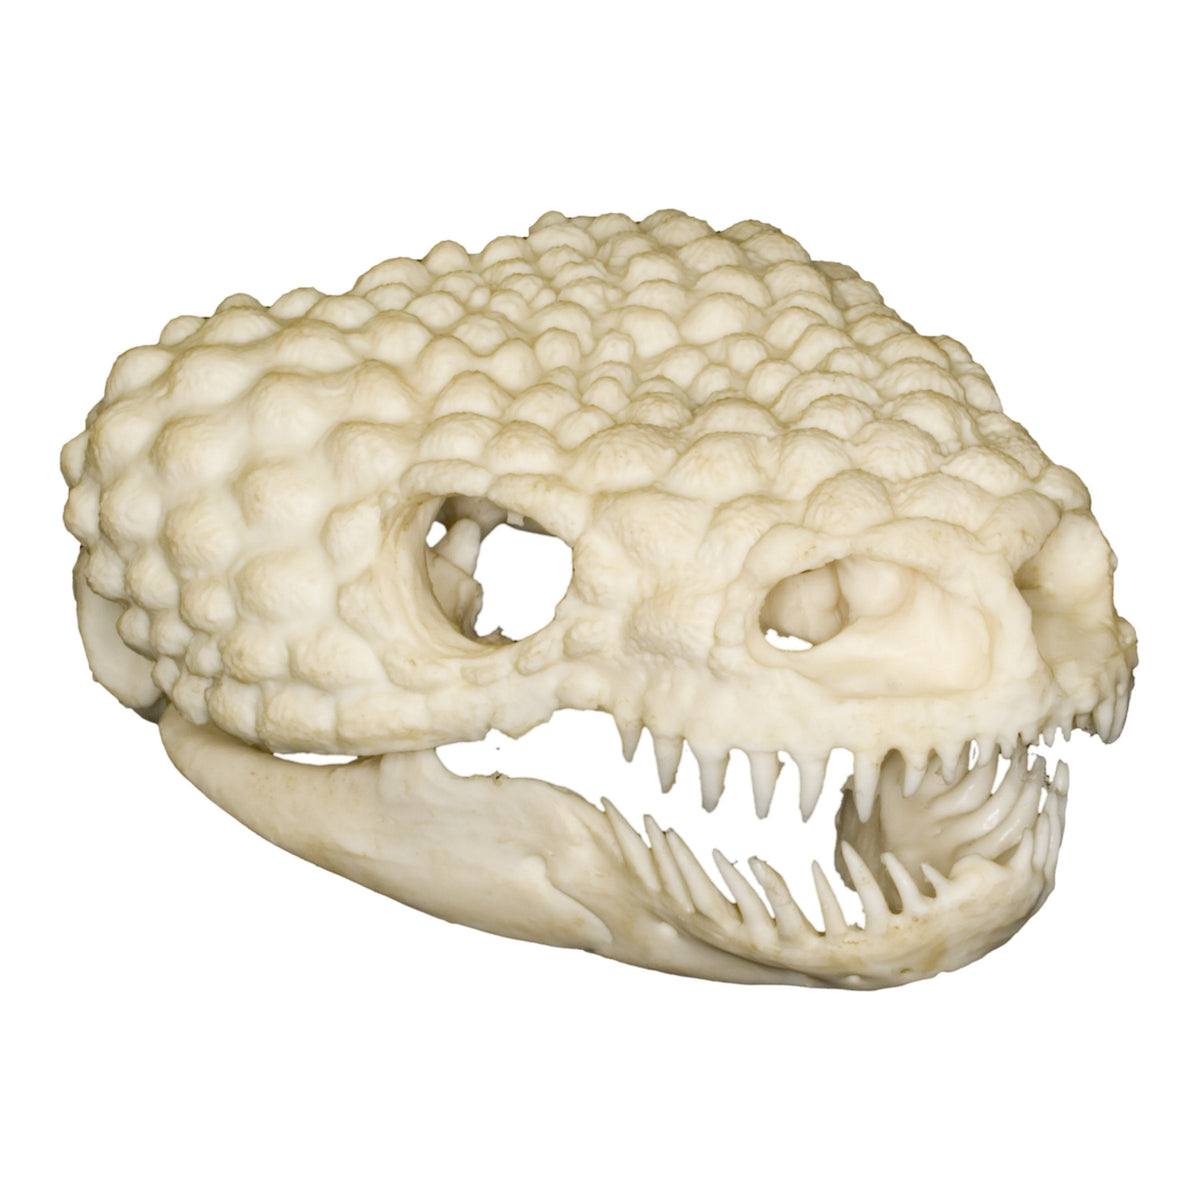 Replica Gila Monster Skull — Skulls Unlimited International, Inc.